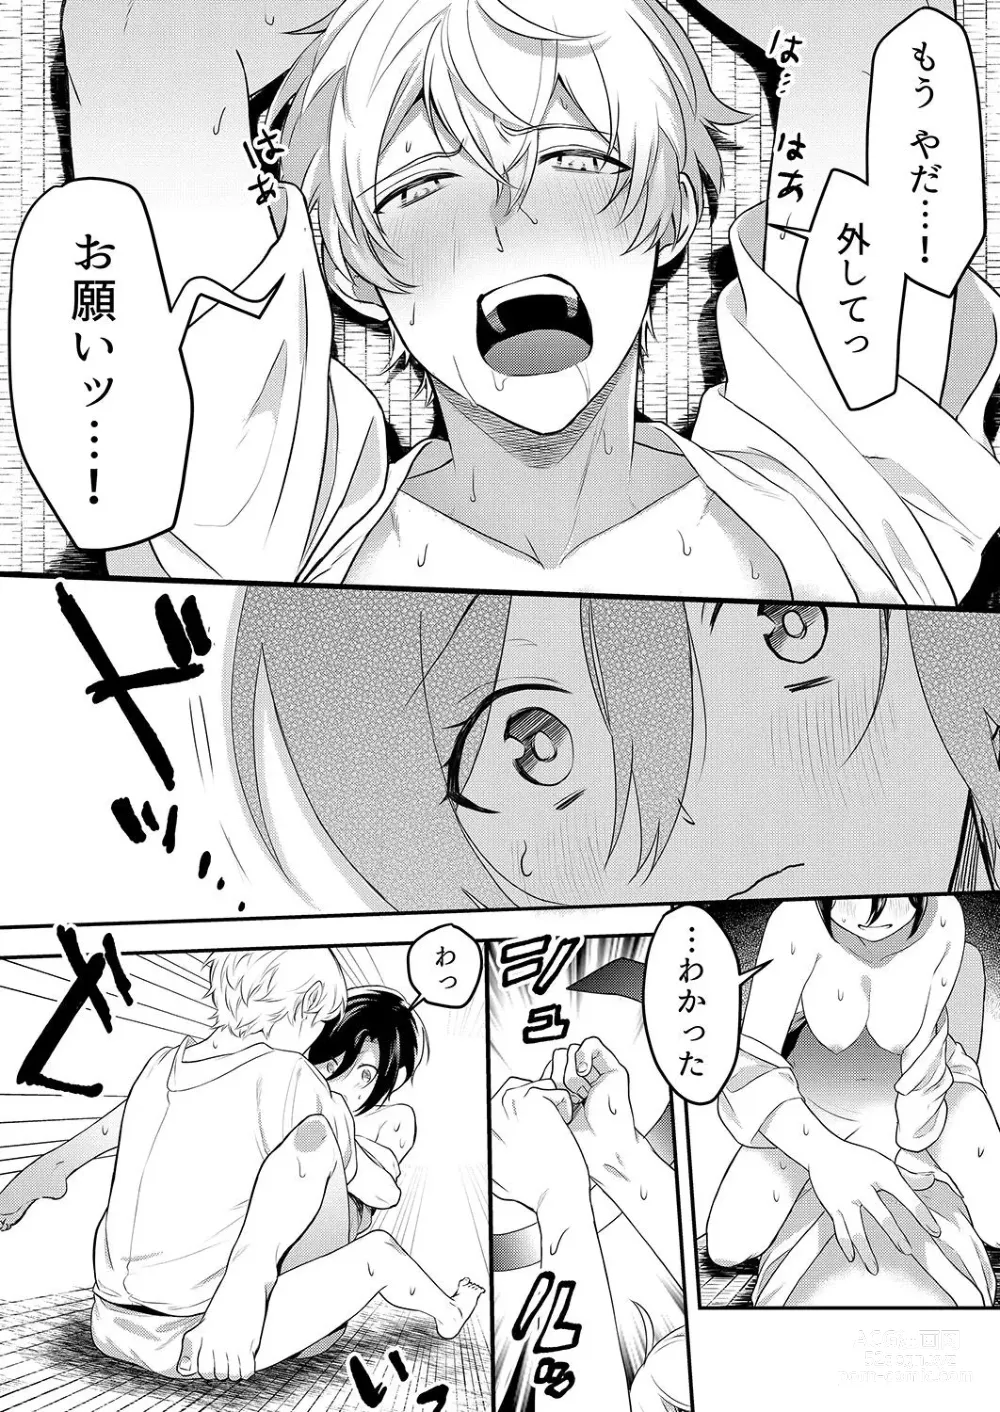 Page 141 of manga Hageshii SEX de Motokare o Wasuresasete ~ Yotta Furi shite Izanau Ane